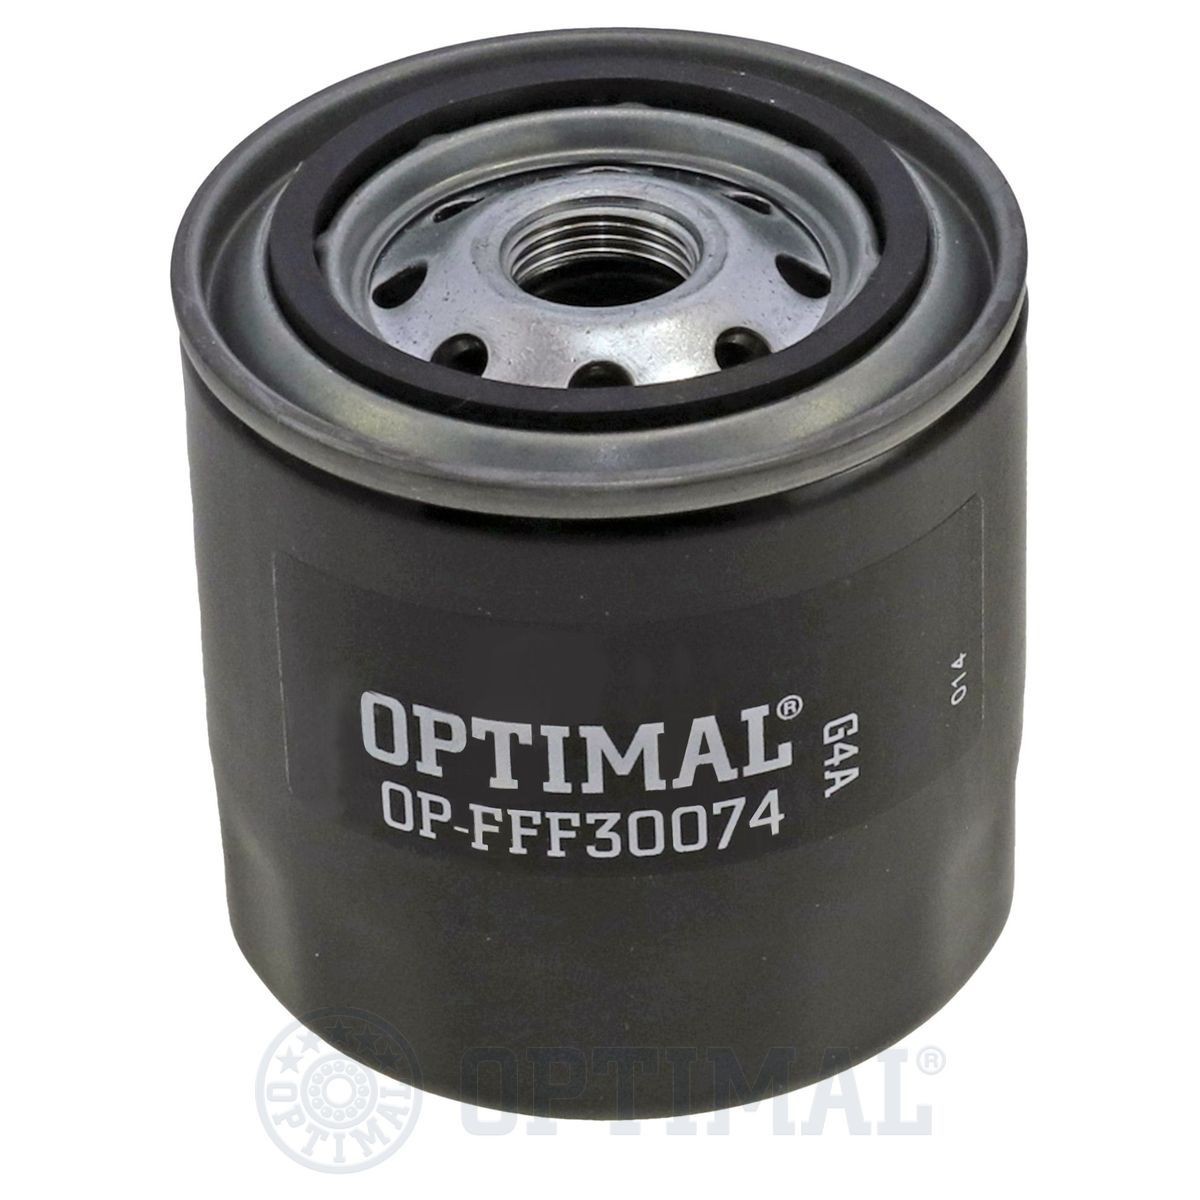 OPTIMAL OP-FFF30074 Fuel filter 2330D-54071